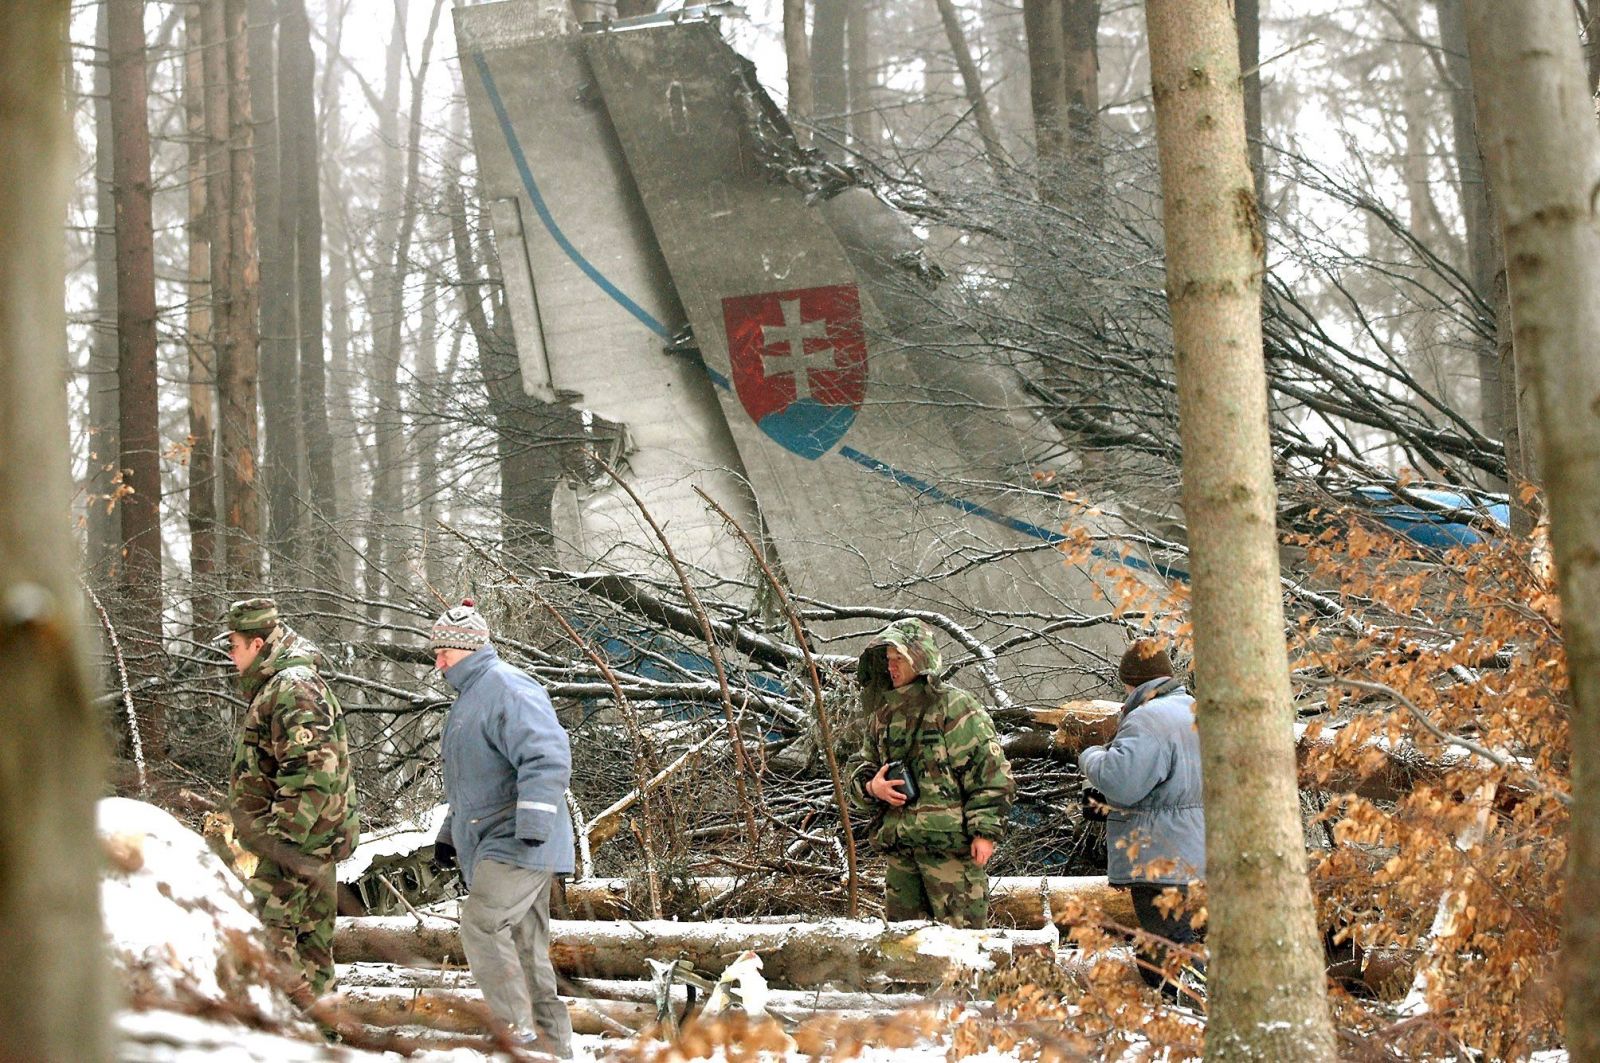 Pred 15. rokmi sa odohrala najväčšia letecká katastrofa v histórii Slovenska. Pri návrate domov zahynulo 42 vojakov